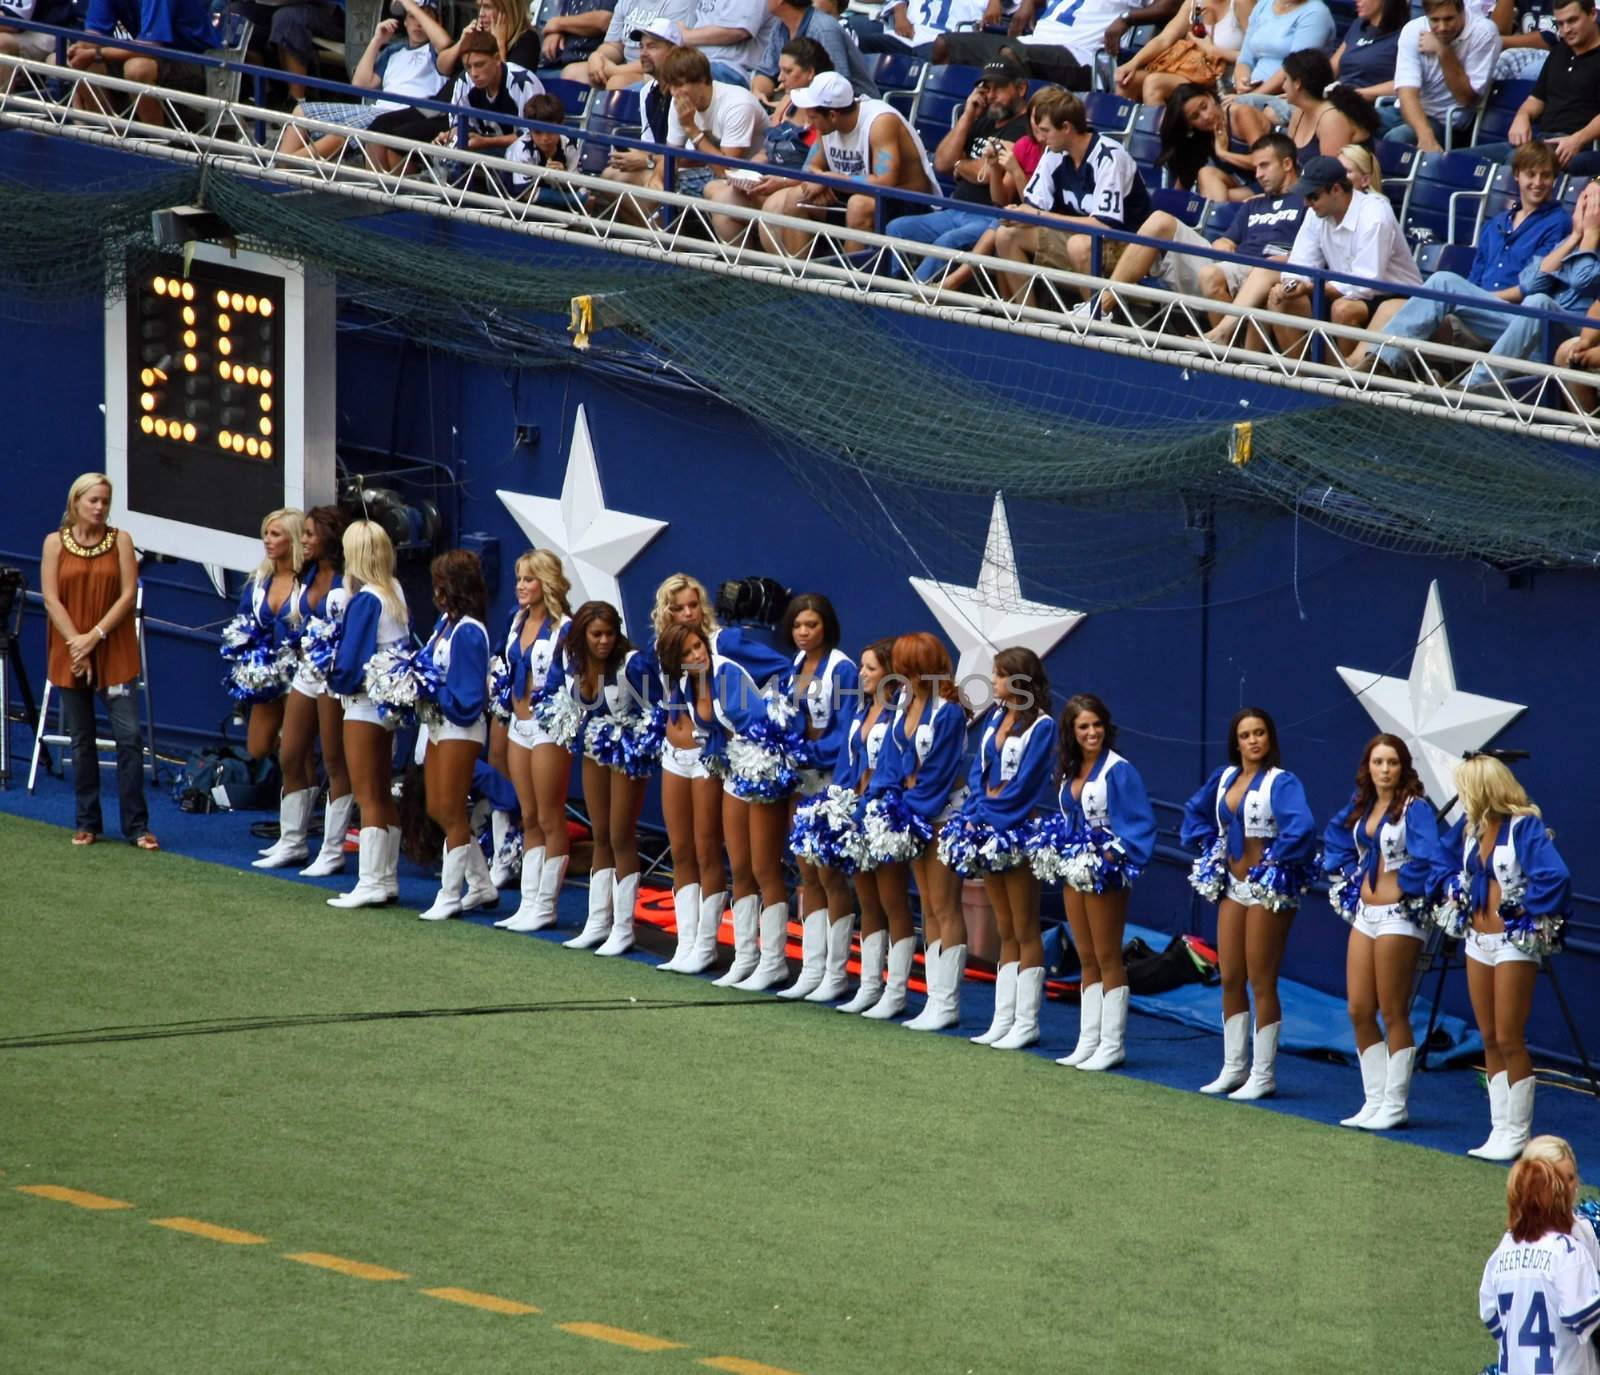 Cowboys Cheerleaders by bellafotosolo